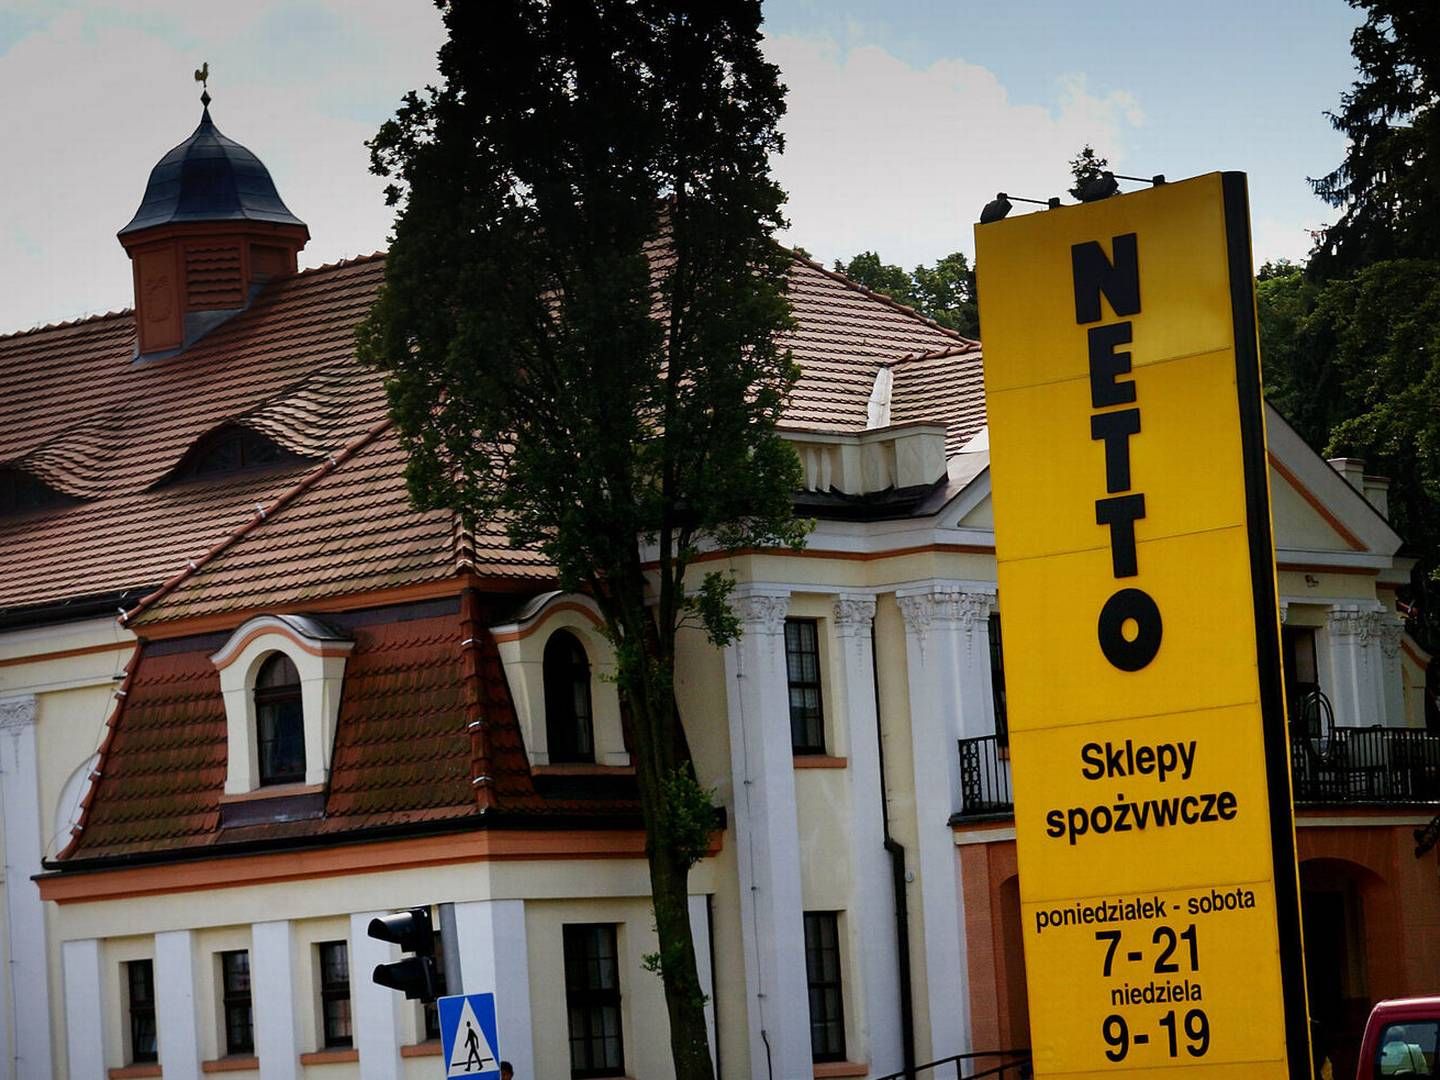 Polen er i dag Nettos største marked målt på antallet af butikker. | Foto: Claus Lunde/Ritzau Scanpix